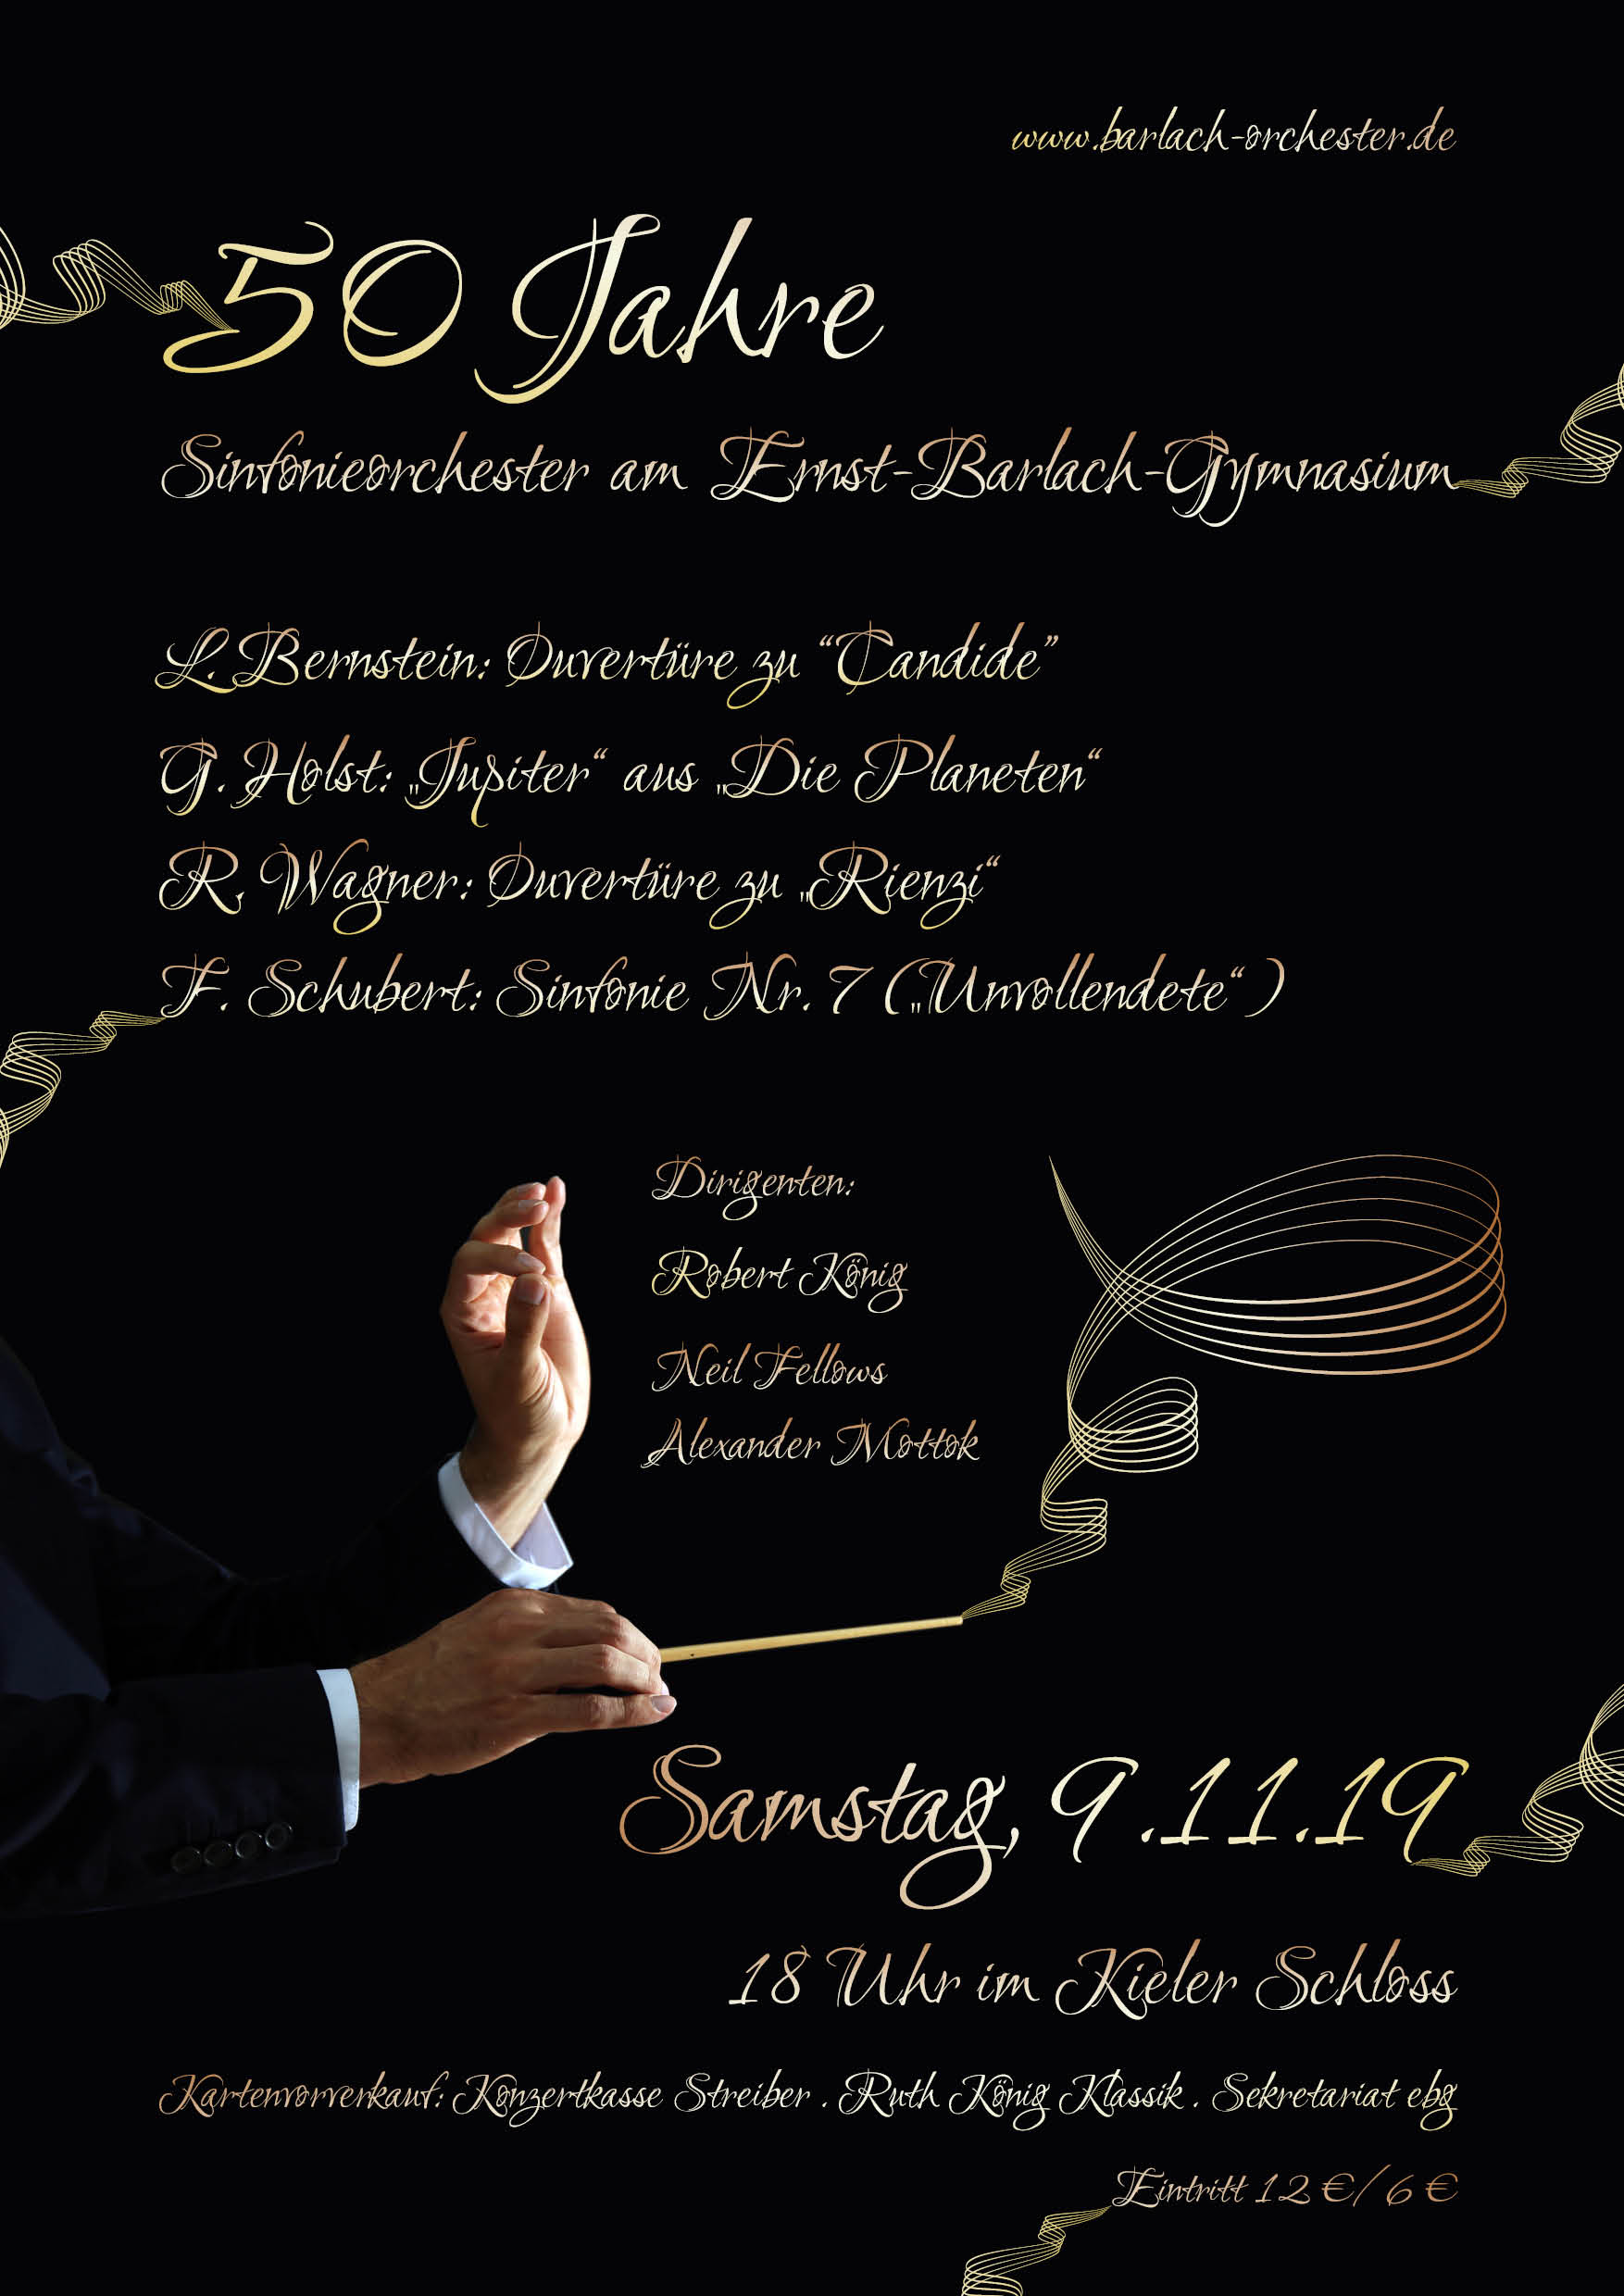 50 Jahre EBG Sinfonieorchester 09.11.2019 18 Uhr Kieler Schloss